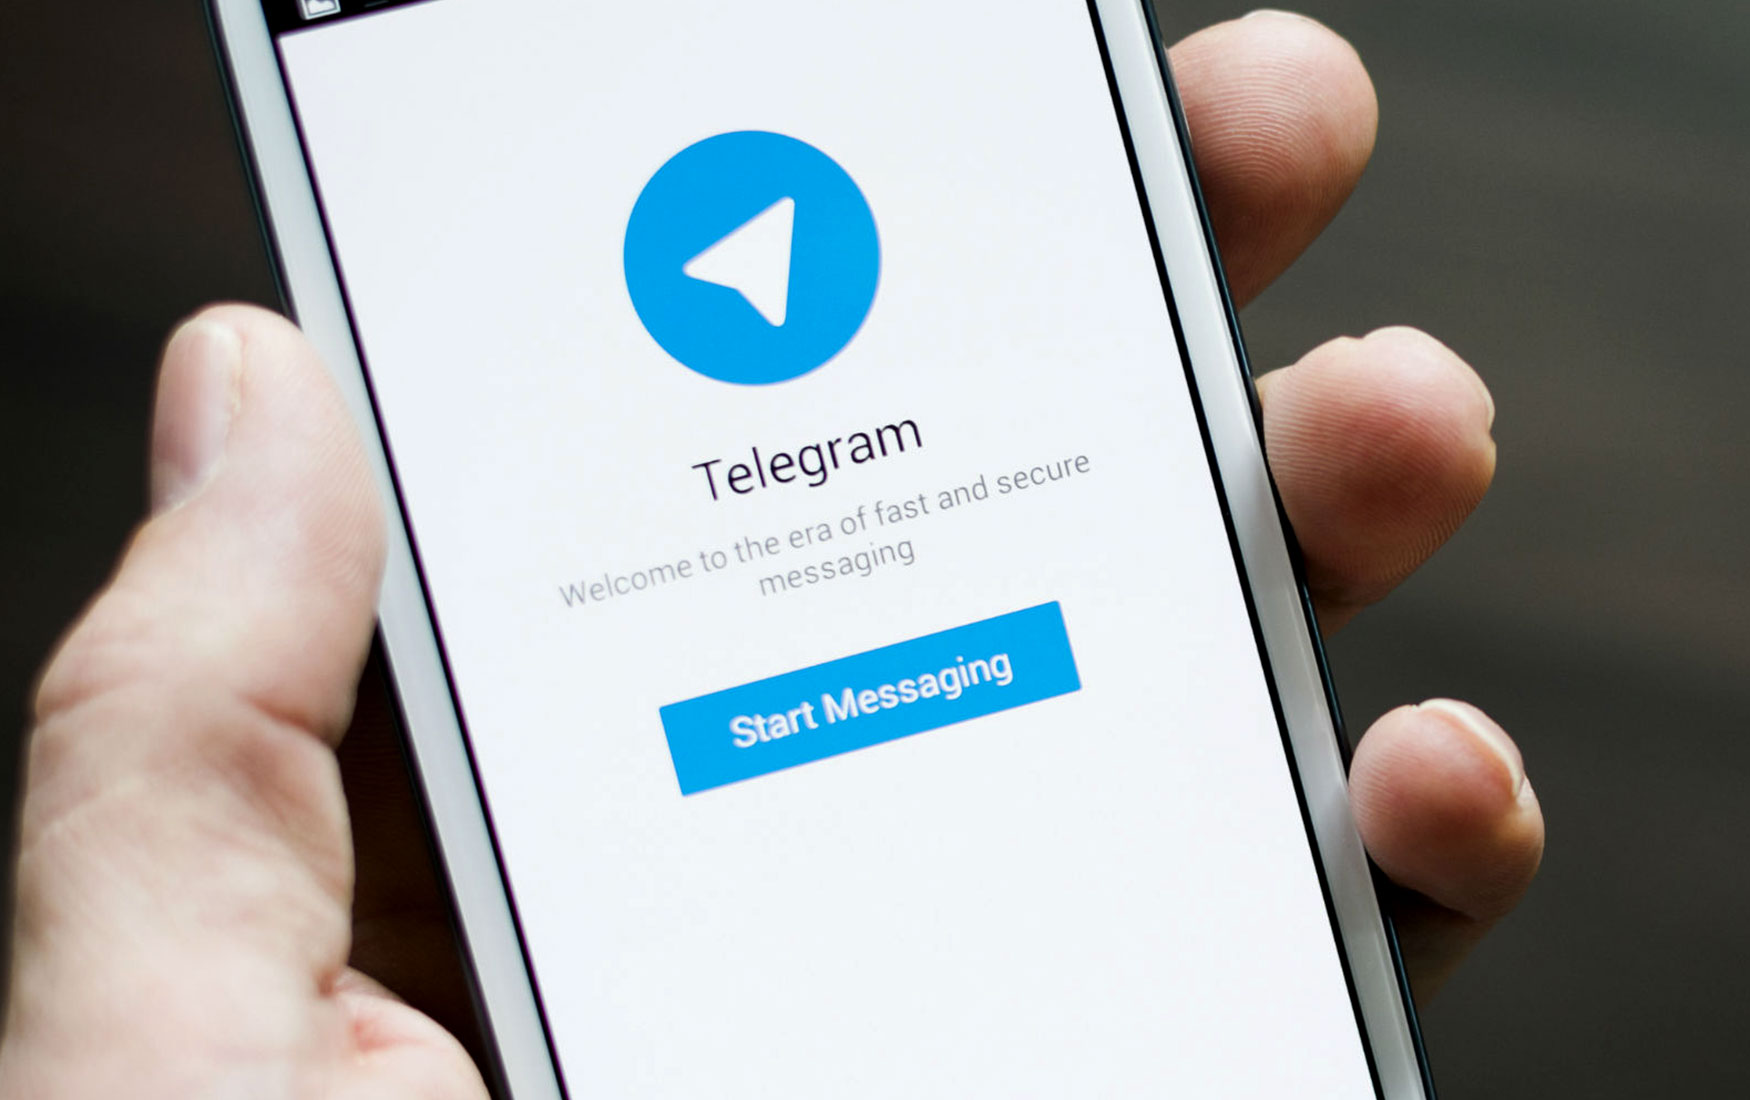  : Telegram       ICO